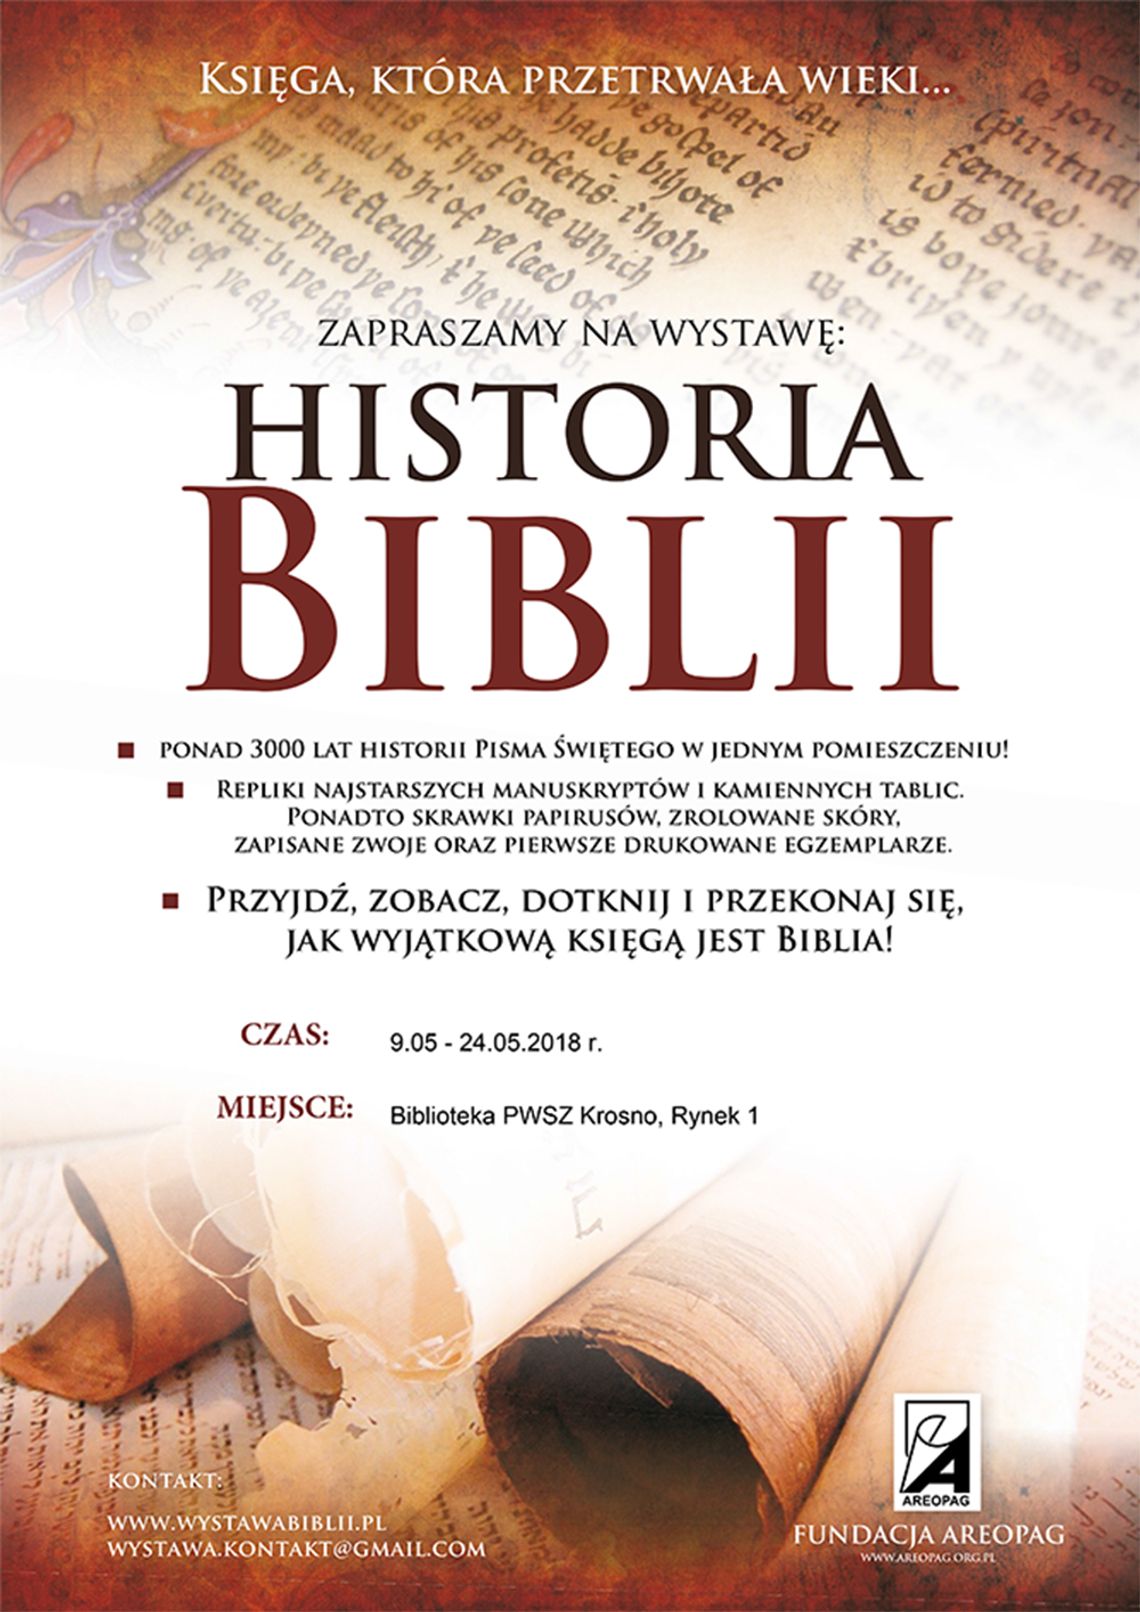 Wystawa - HISTORIA BIBLII